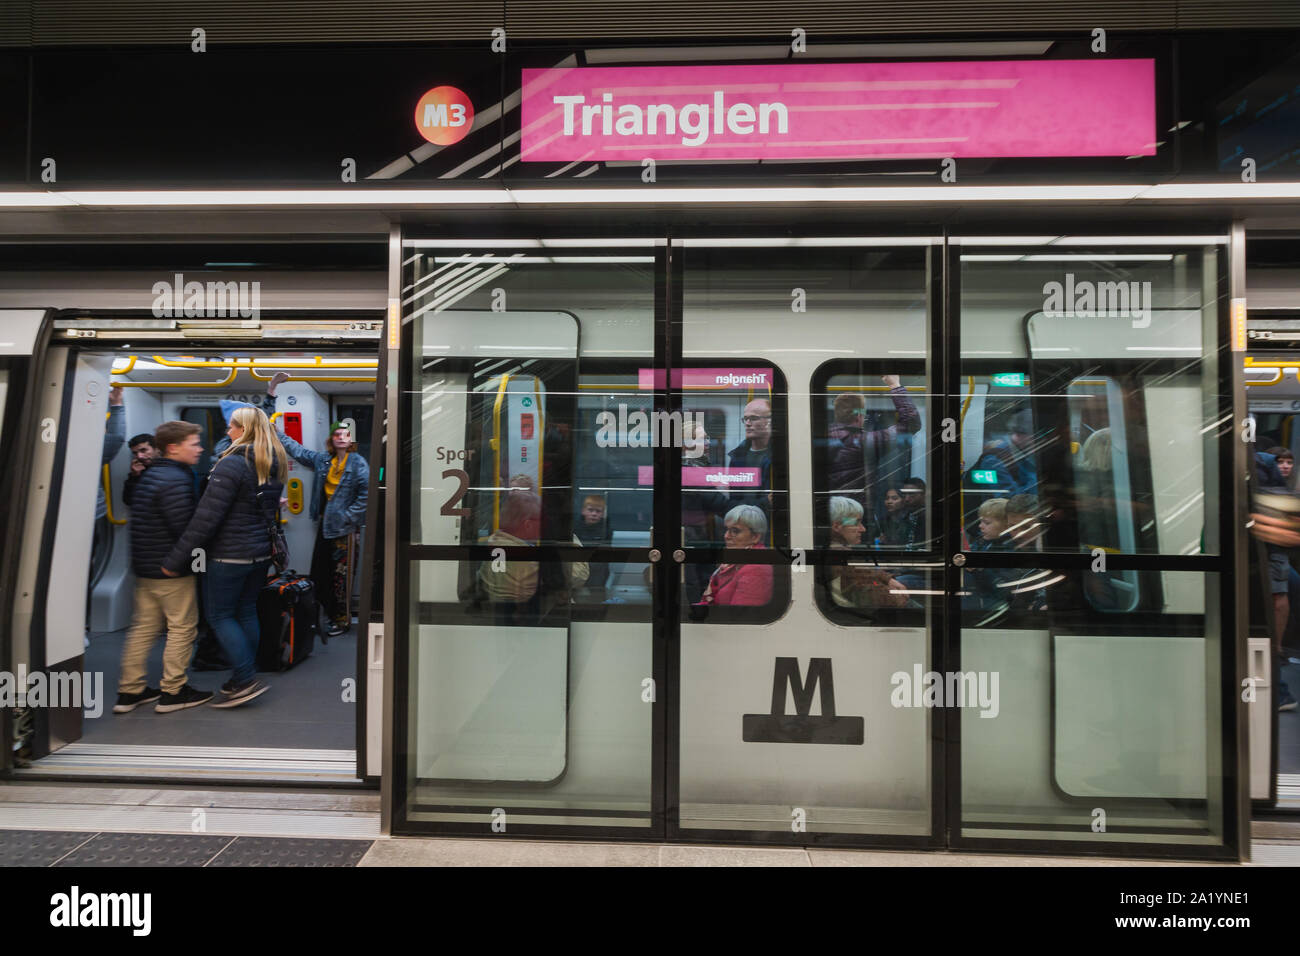 Copenaghen, Zelanda Danimarca - 29 9 2019: persone che stanno cercando nuove M3 Cityringen metro linea. Stazione Trianglen Foto Stock